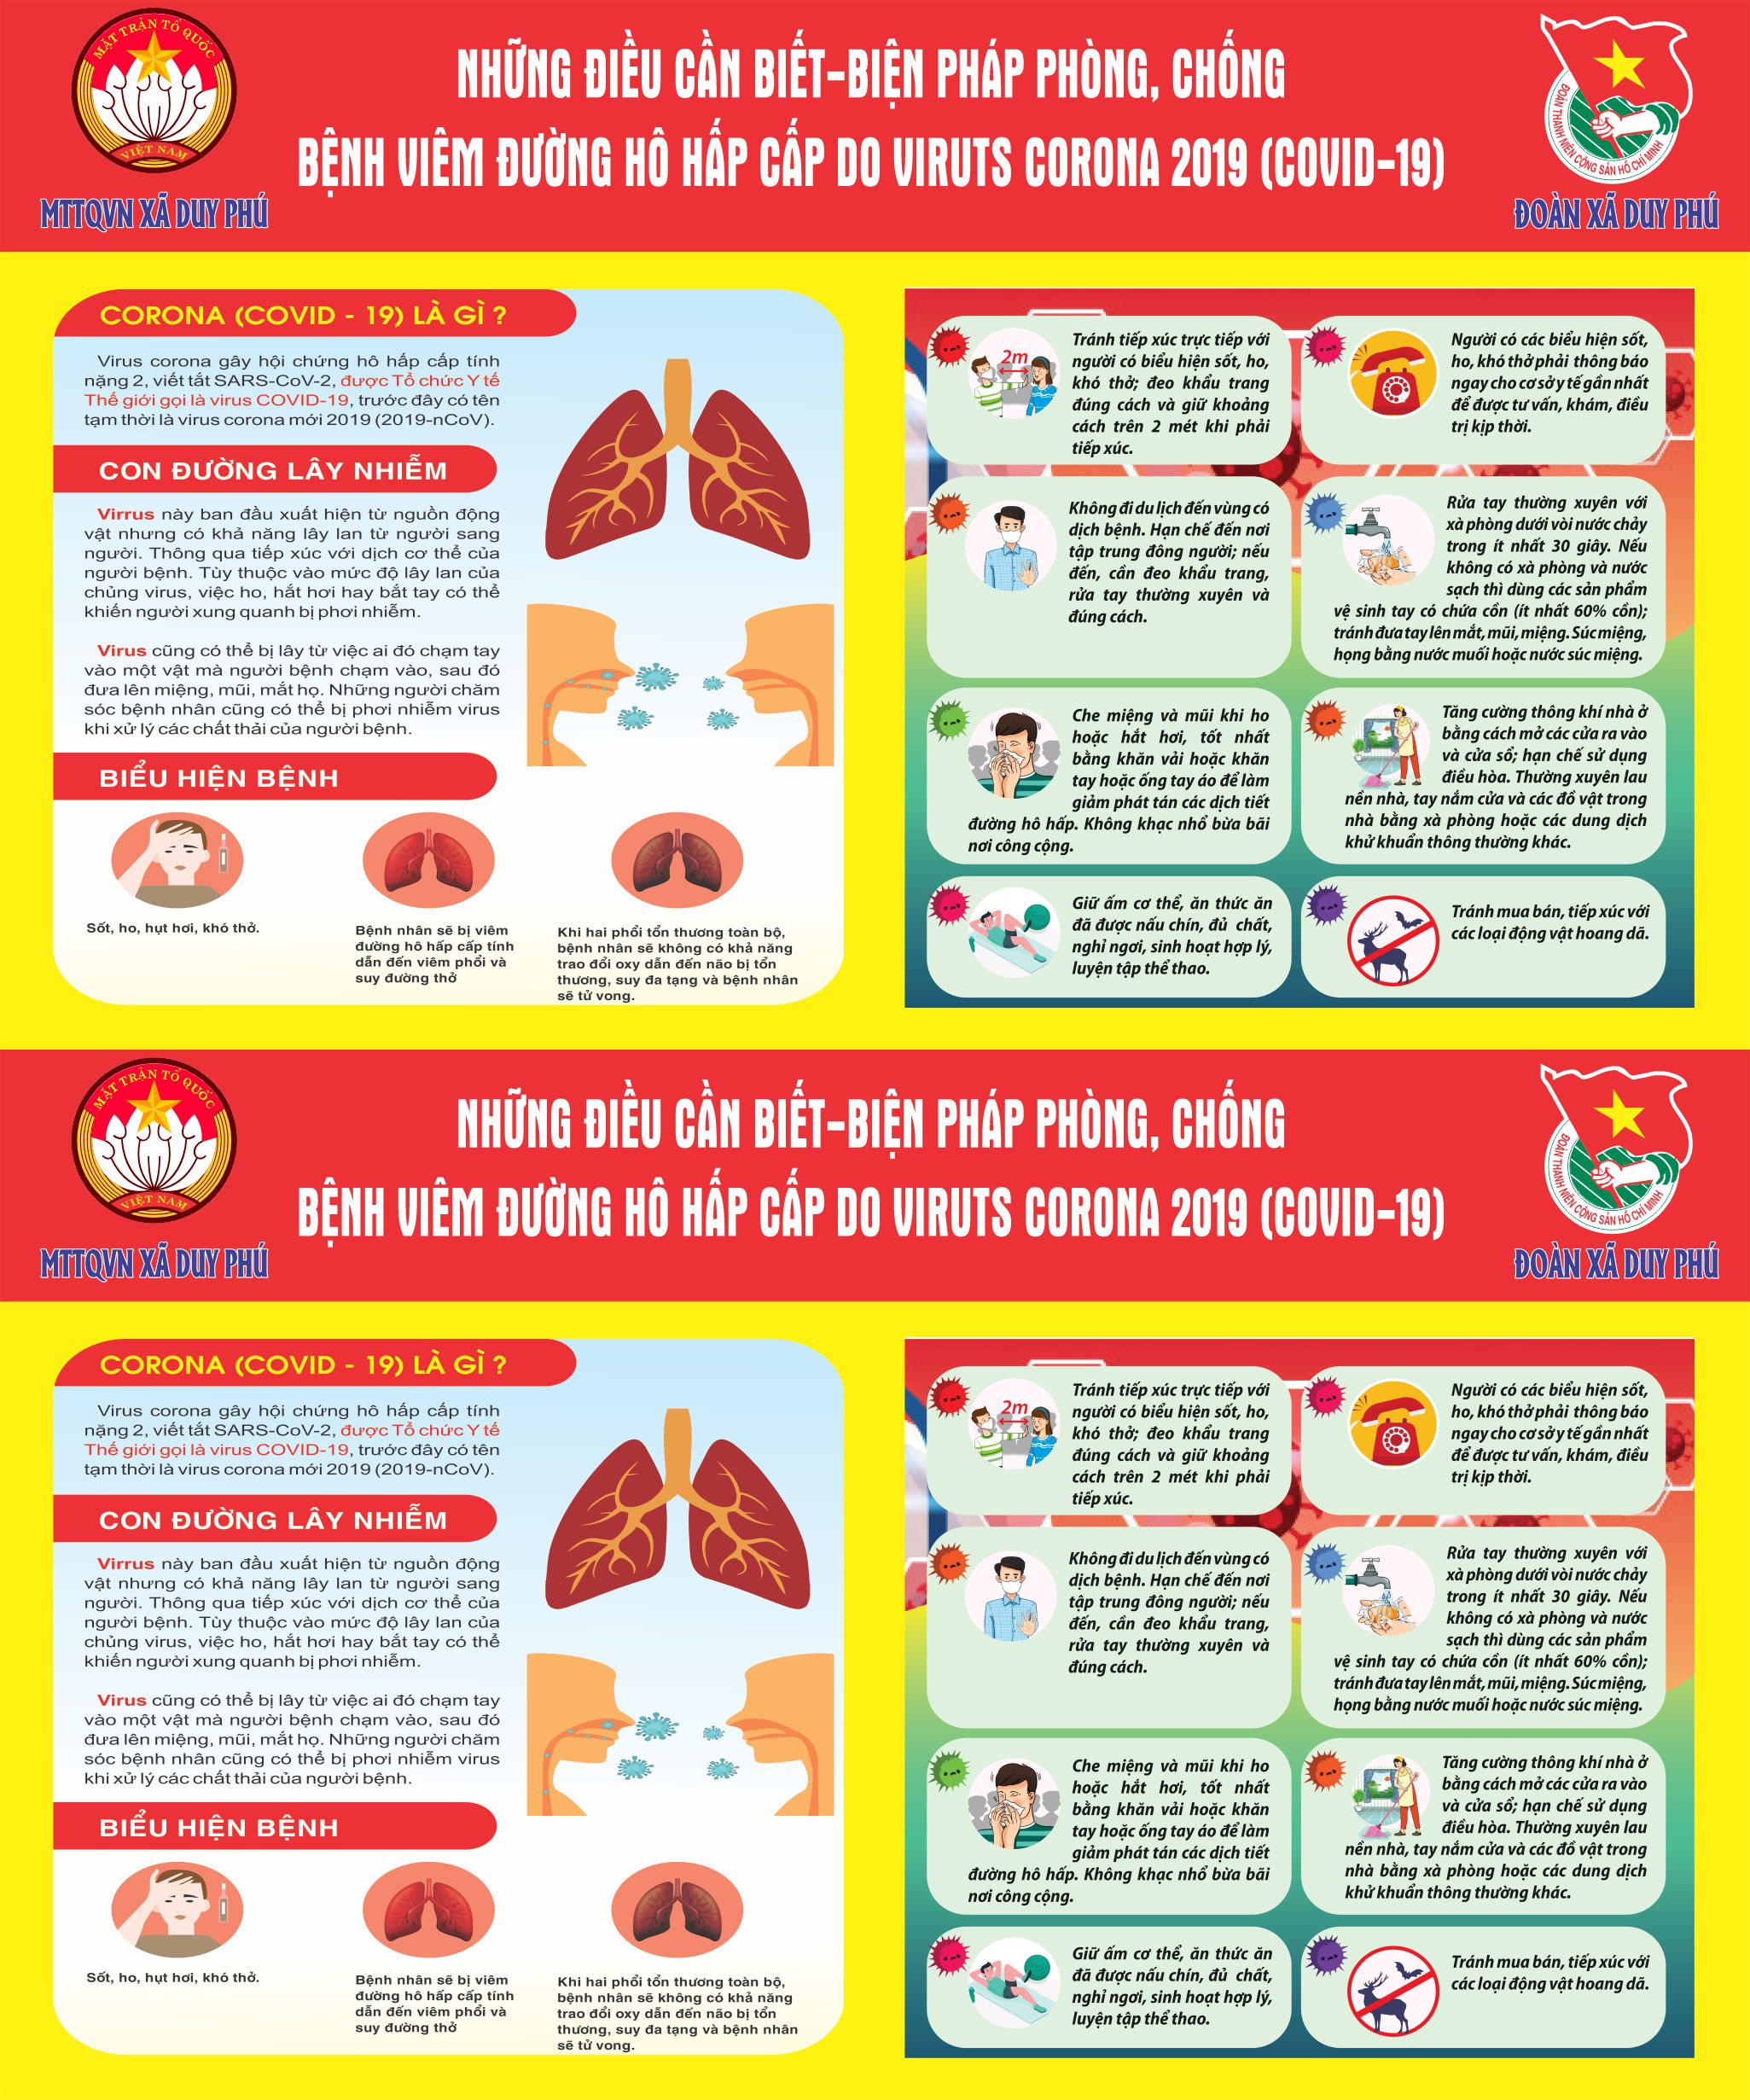 Mẫu tờ rơi – Pano – Poster Covid-19 – Những điều cần biết biện pháp phòng chống bệnh viêm đường hô hấp cấp do virus corona 2019